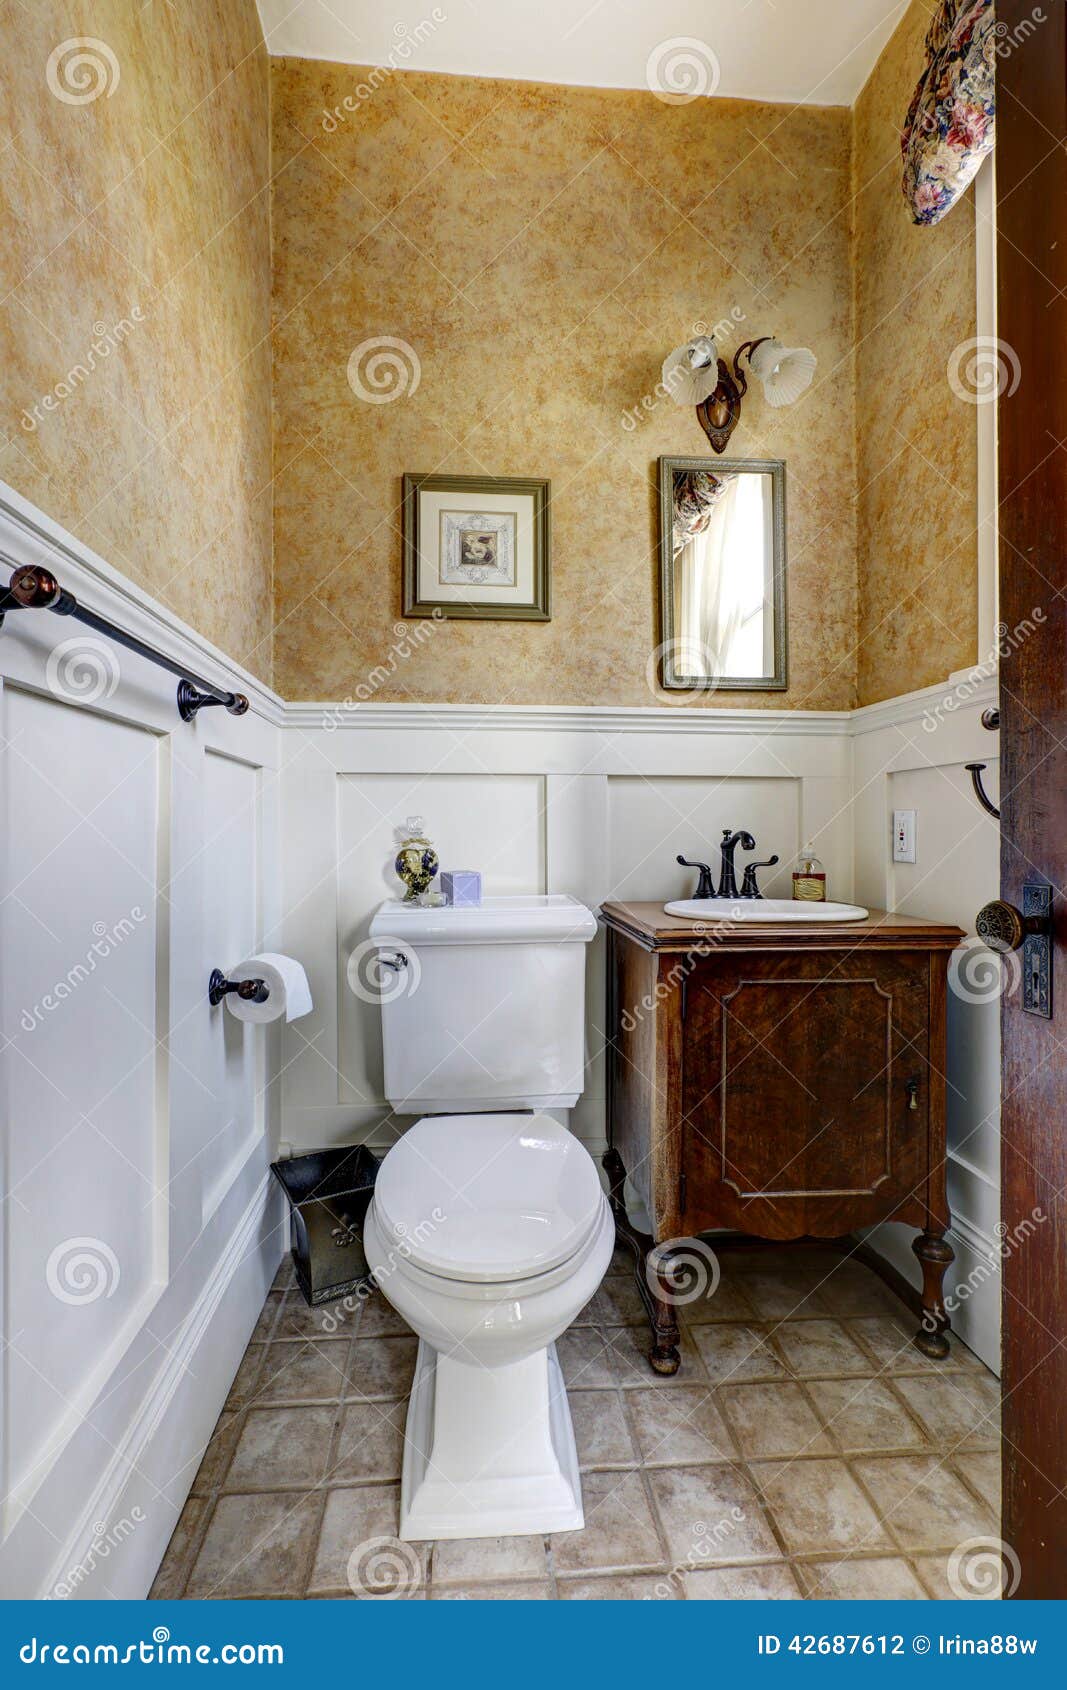  do banheiro do mocha com assoalho de telha e armário da vaidade da